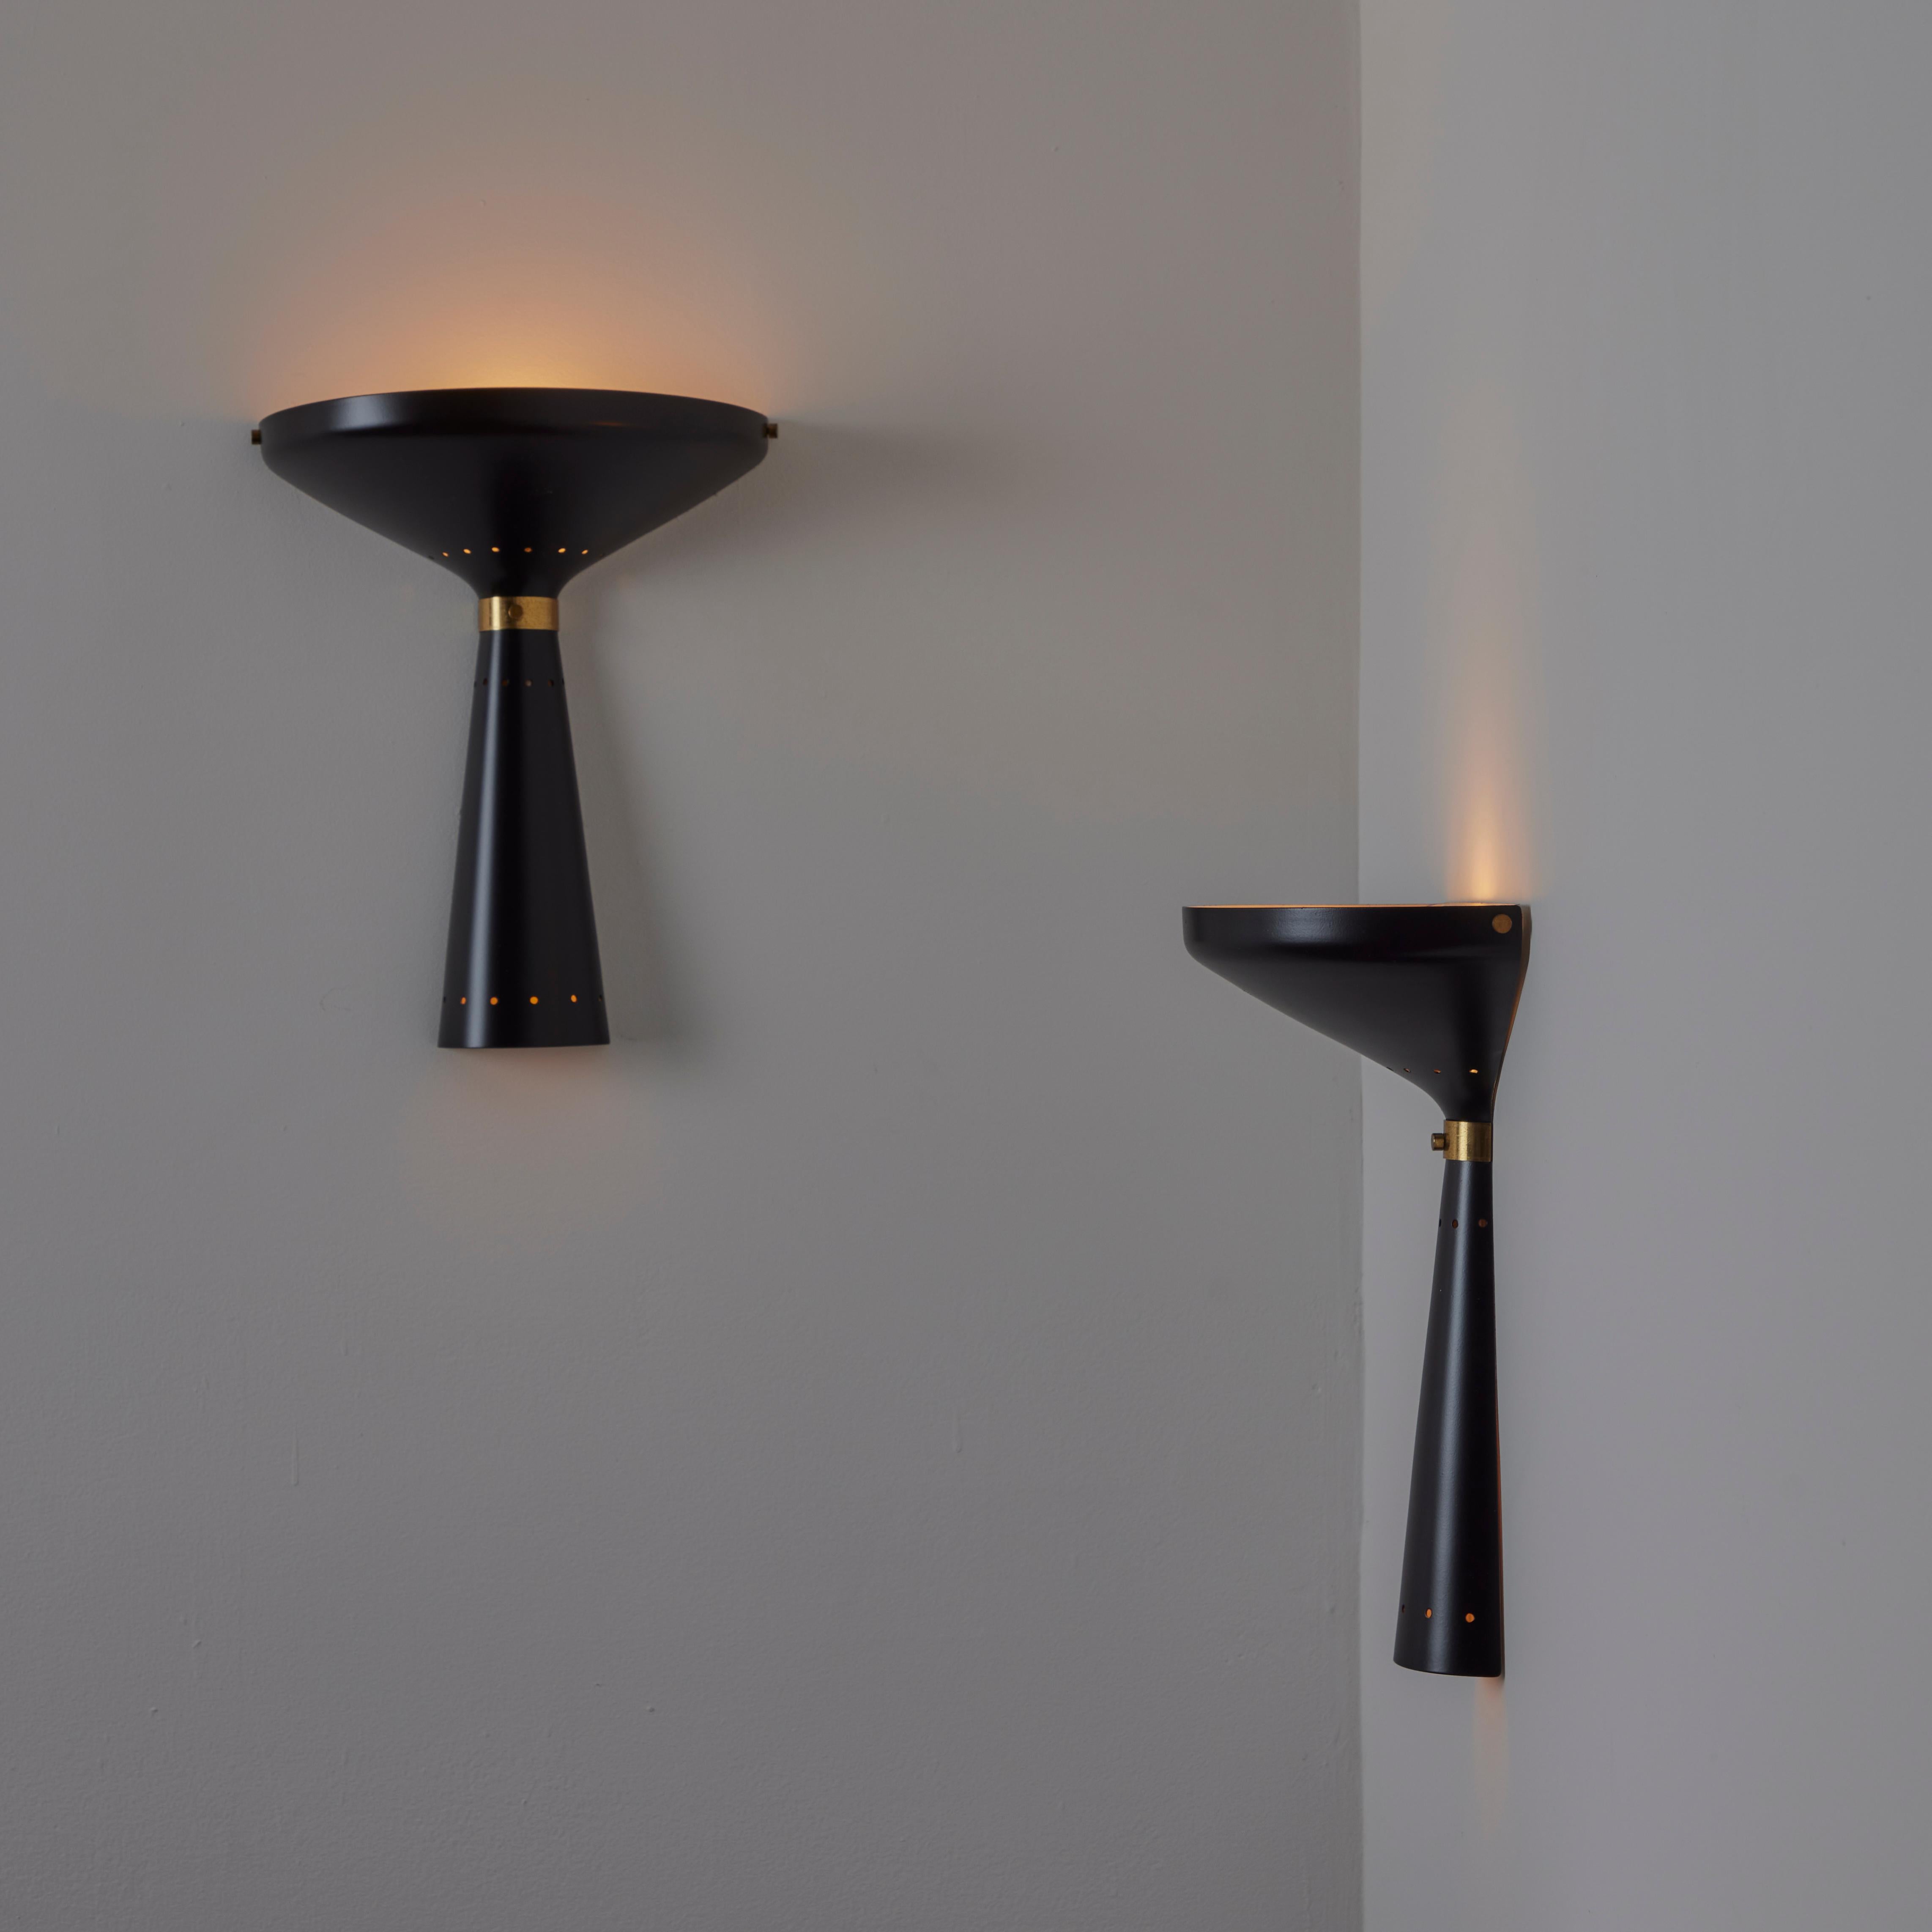 Ein Paar Stilnovo-Leuchter. Entworfen in Italien, etwa in den 1960er Jahren. Schwarz emaillierte Wandlampen mit Fliege und Messingkragen. Die Perforation auf der oberen Hälfte sorgt für ein schönes Detail. Für eine einzelne E27-Fassung, angepasst an